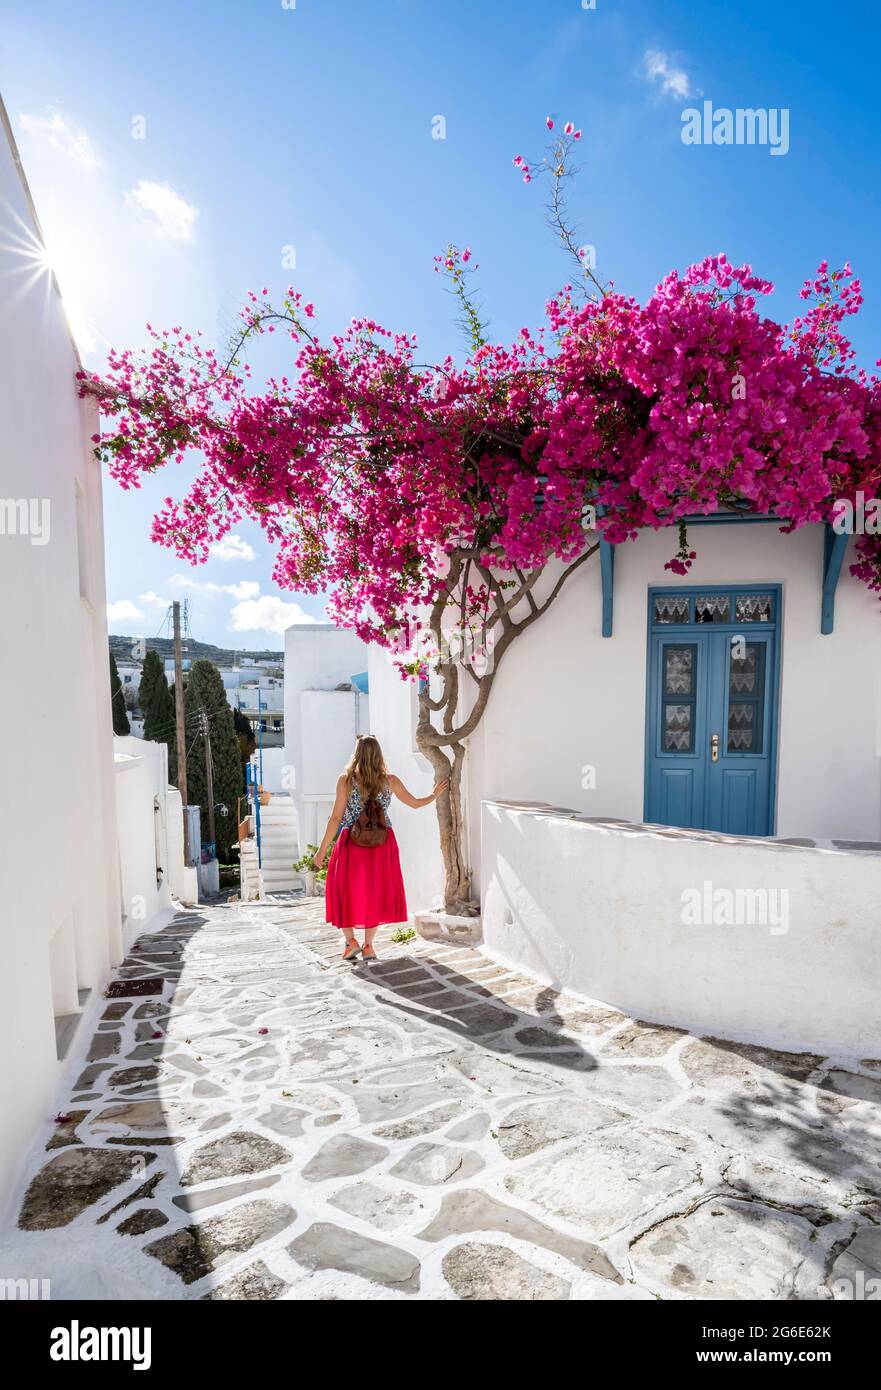 Maisons blanches-bleues avec bougainvillea pourpre en fleurs (Bougainvillea), Jeune femme à la robe rouge dans la vieille ville de Lefkes, Paros, Cyclades, Grèce Banque D'Images